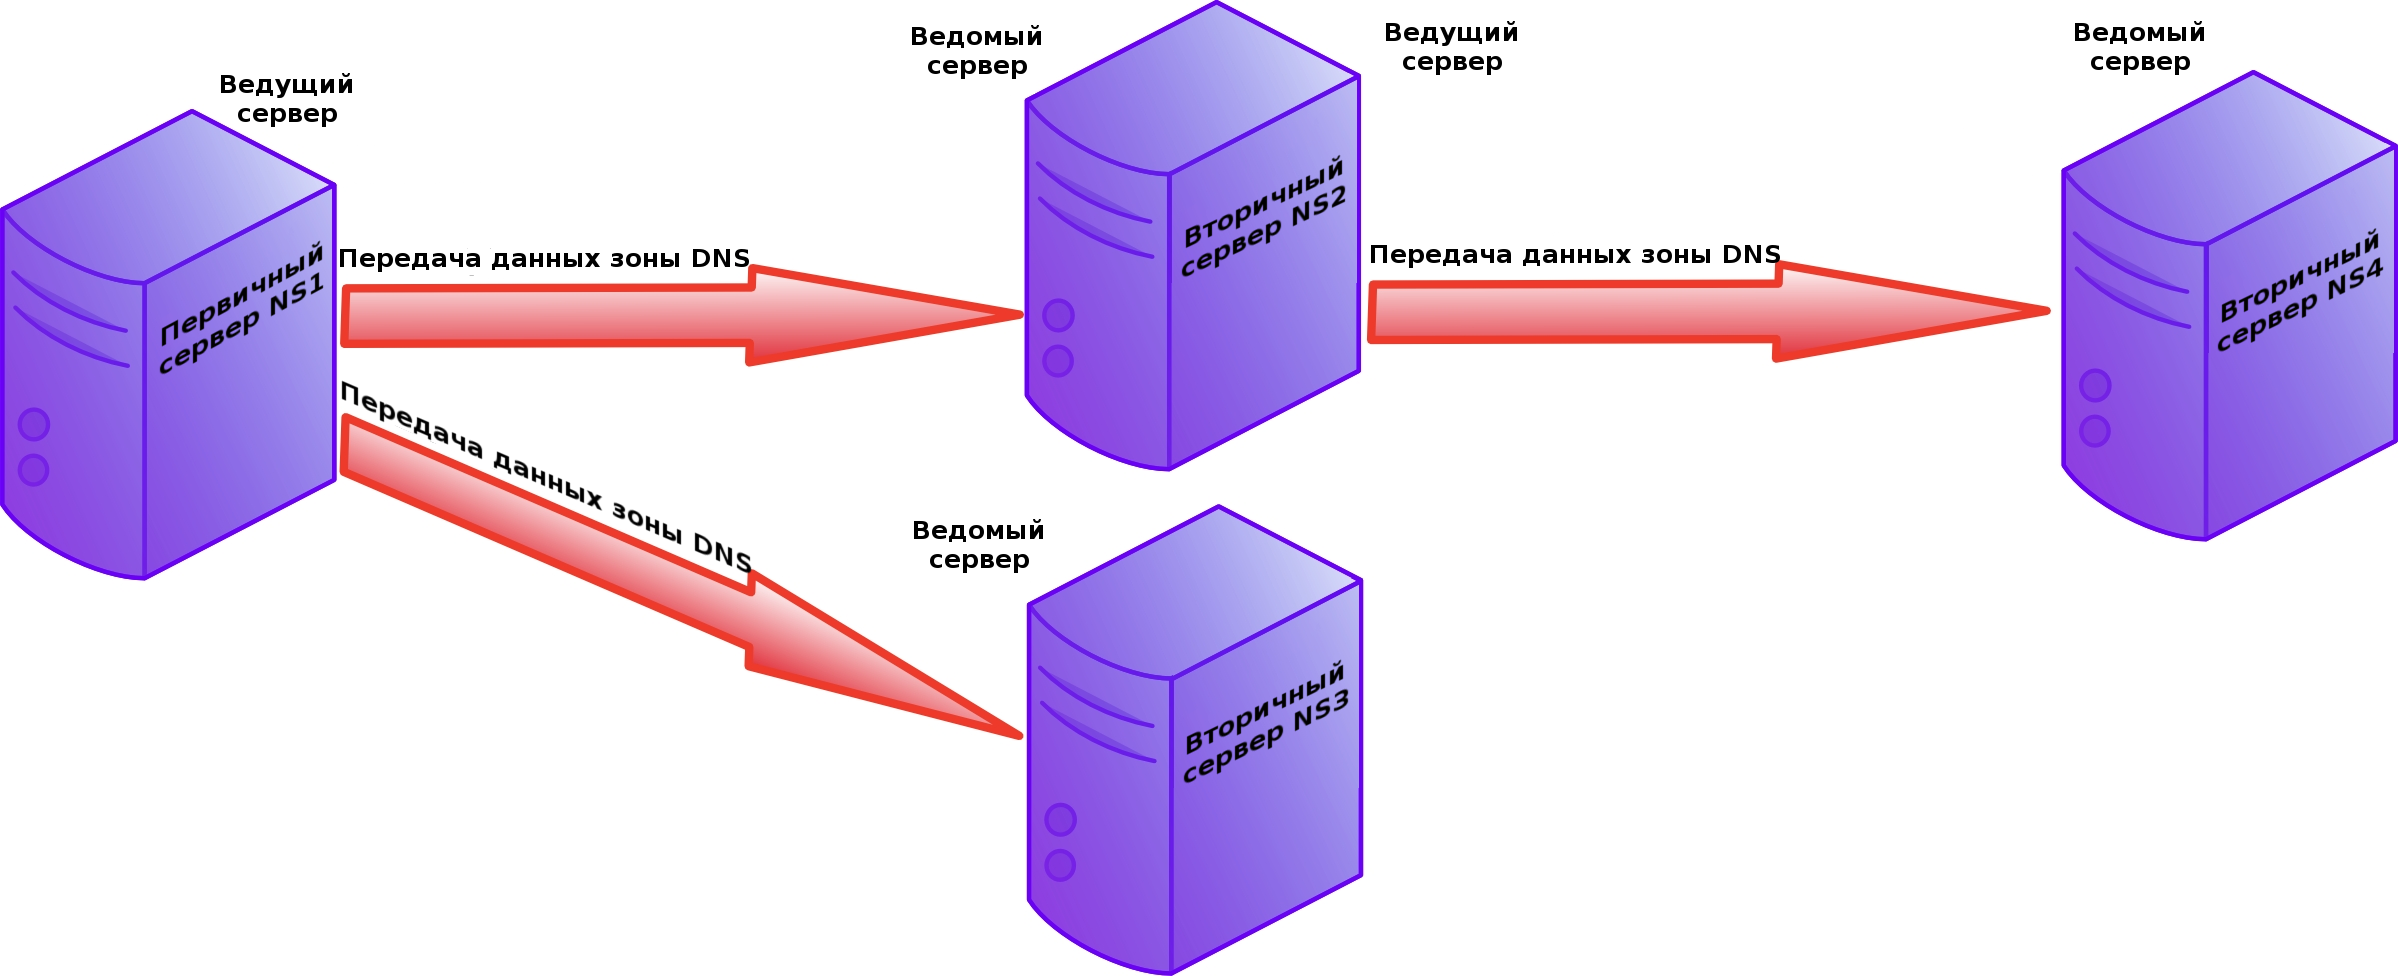 Ведущие и ведомые серверы DNS